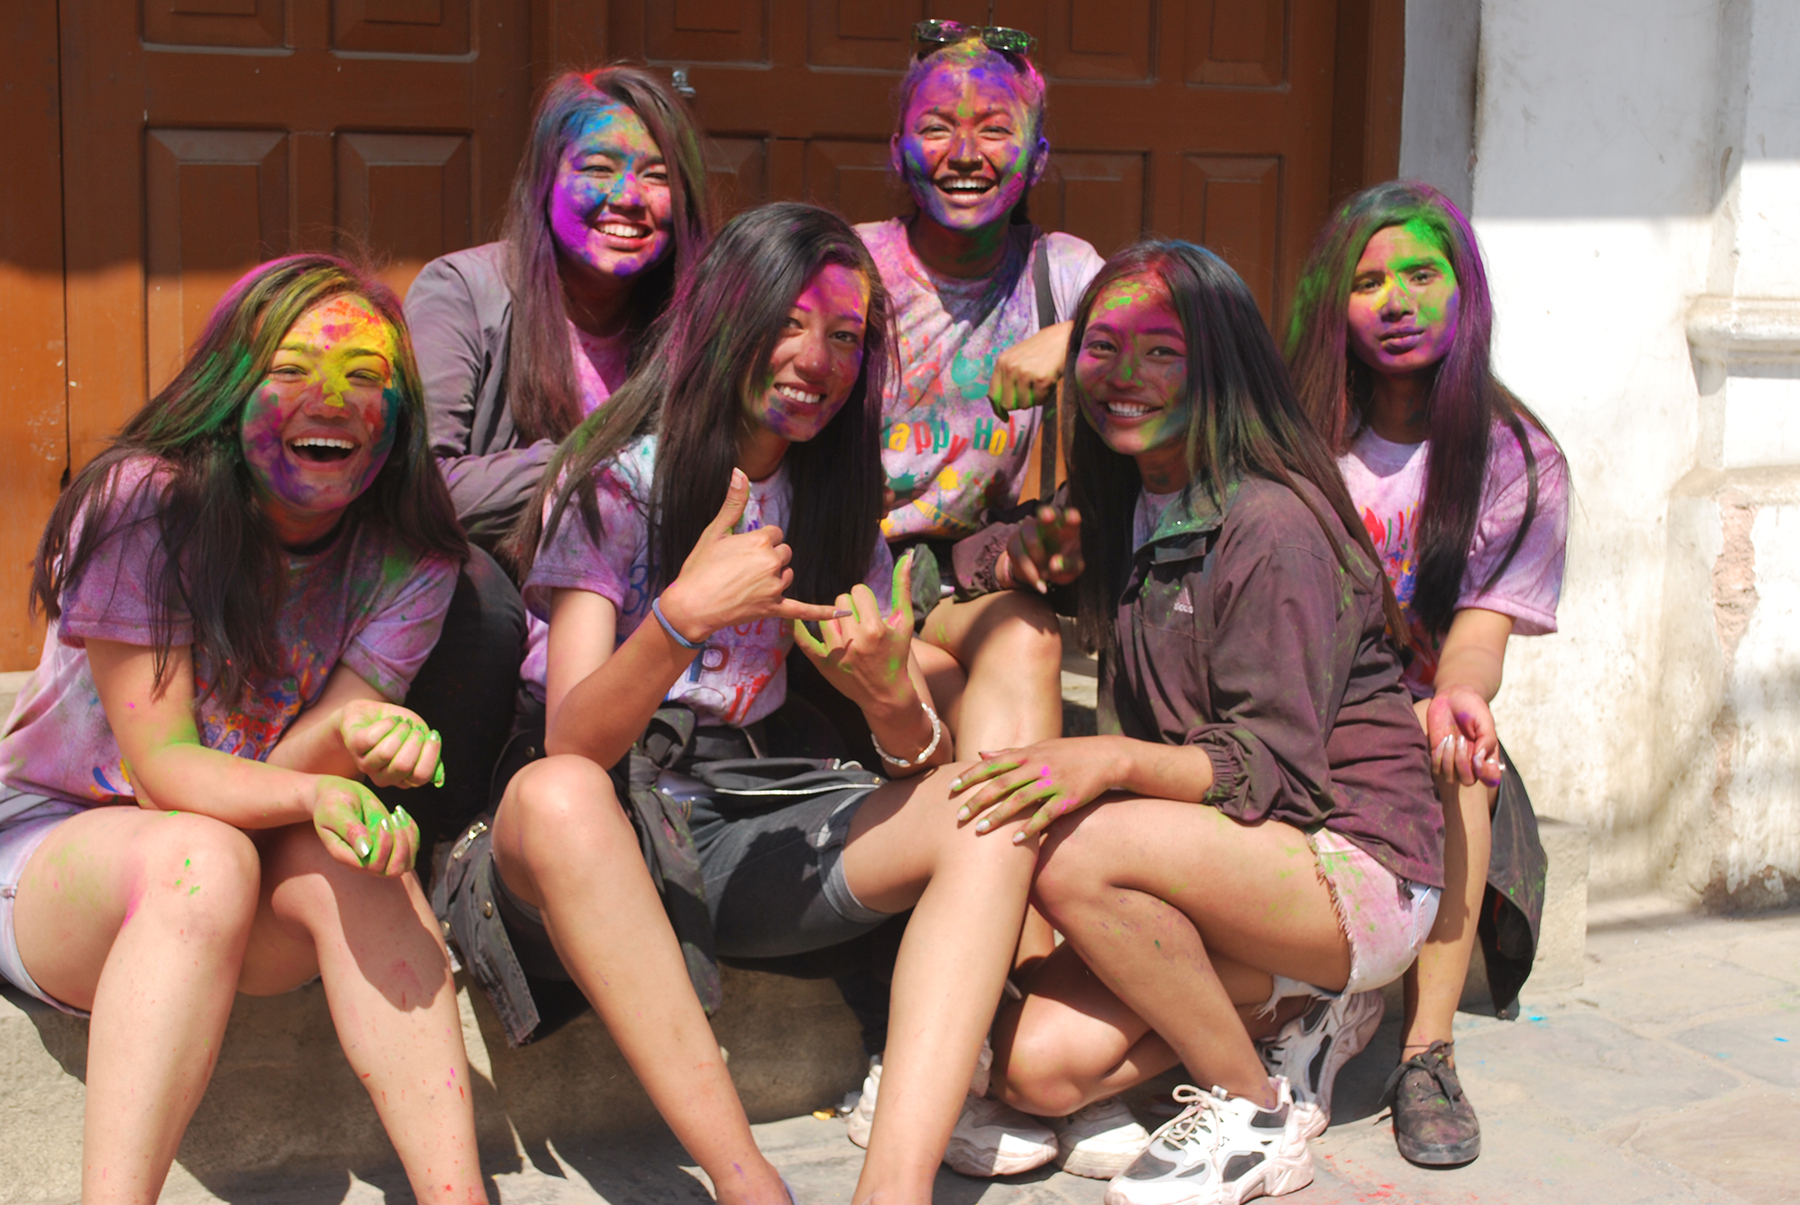 Revellers celebrate Holi in Kathmandu